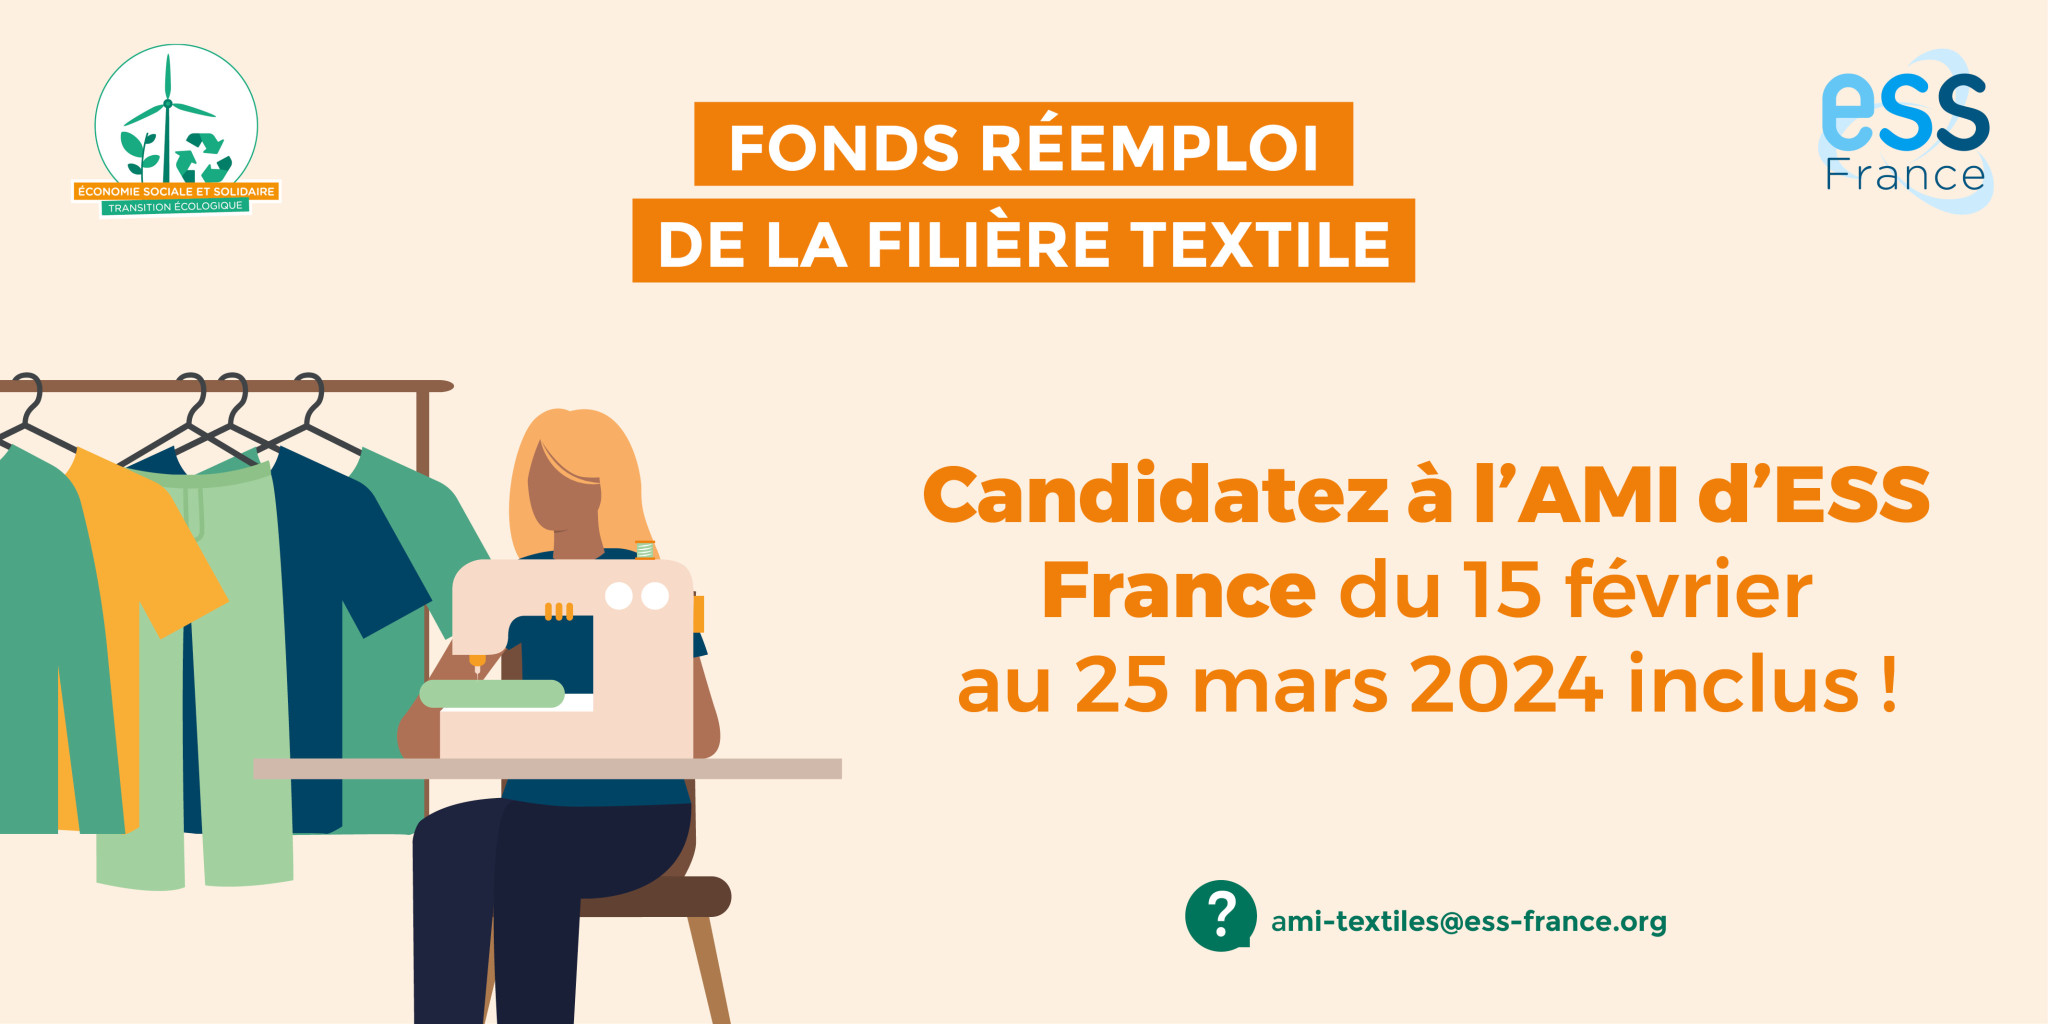 Candidatez à l'AMI d'ESS France du 15 février au 25 mars 2024 inclus !